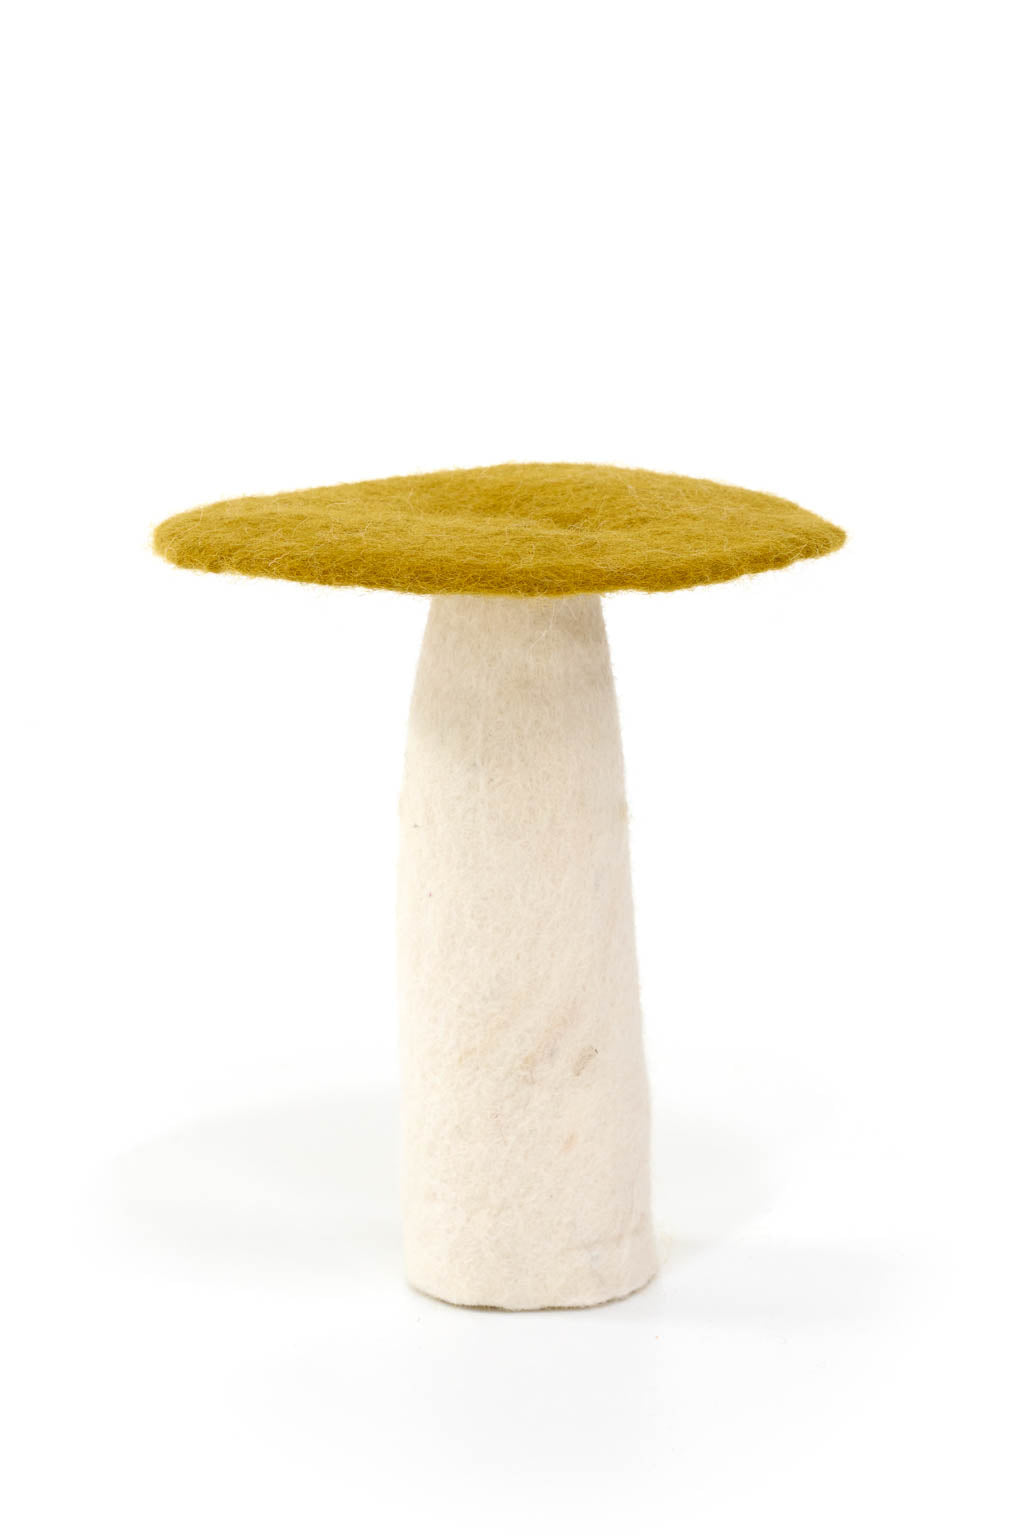 Mushroom - Extra Large 18cm